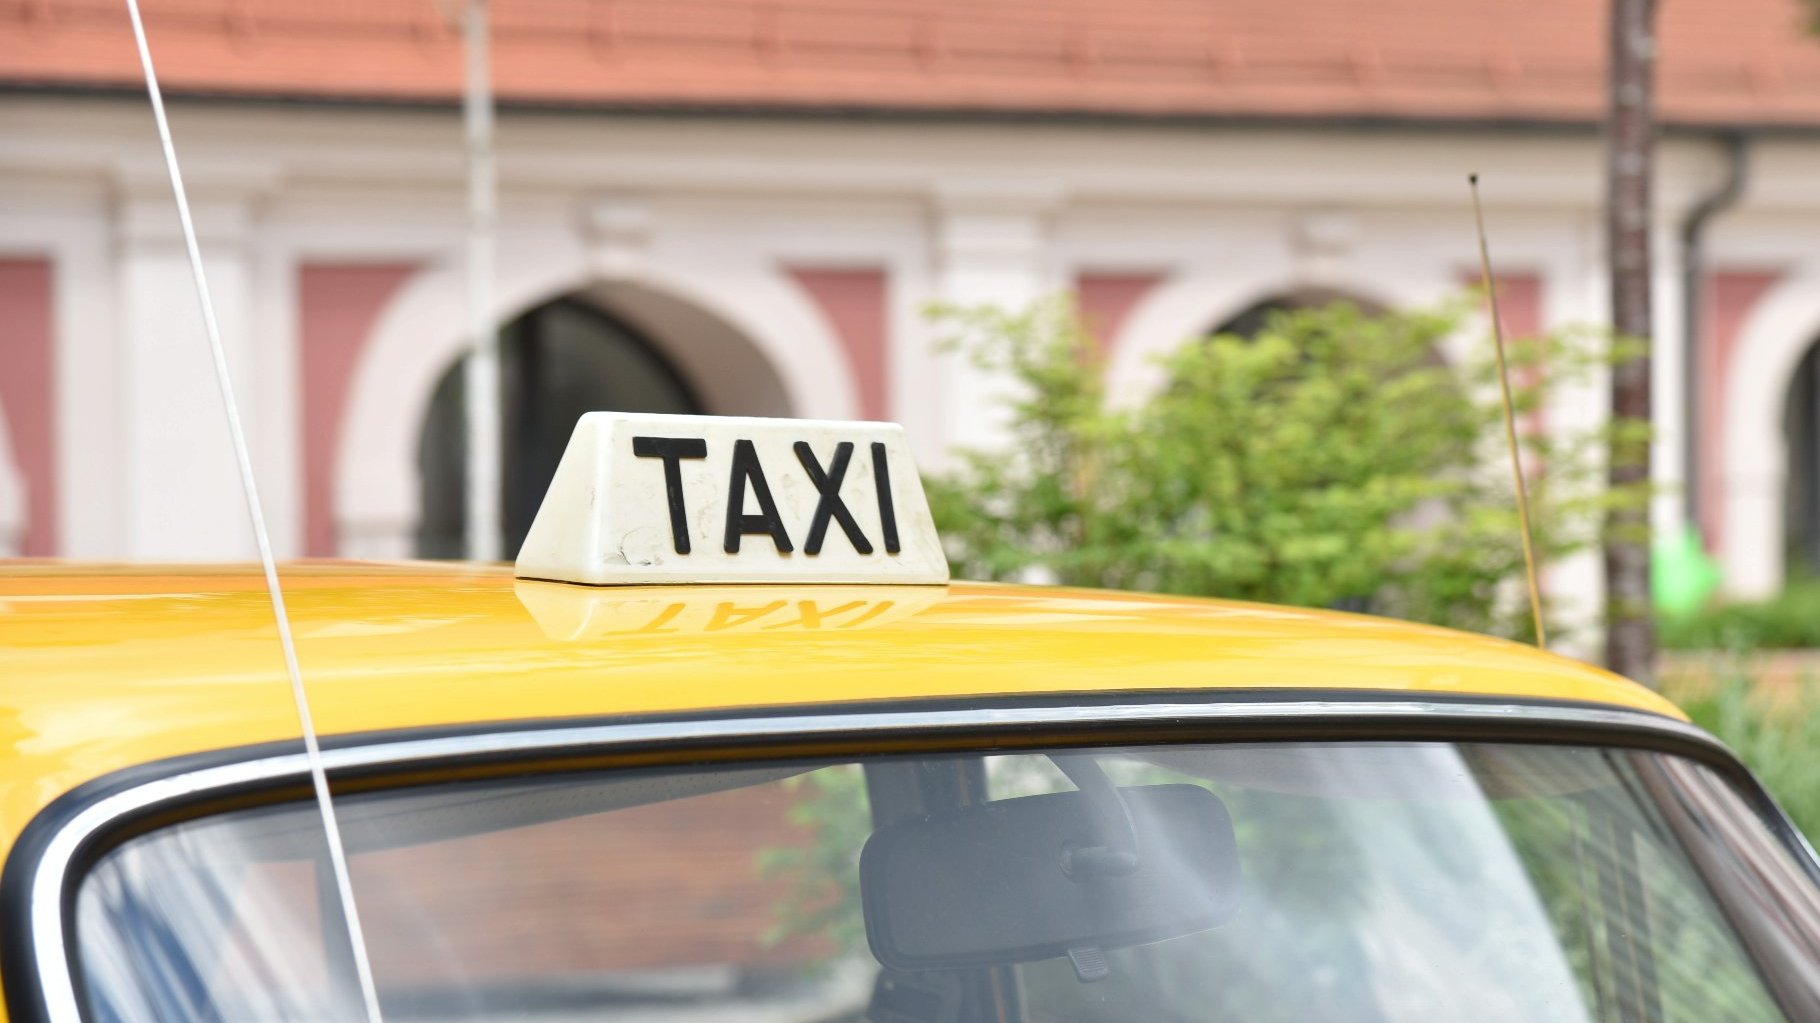 Zdjęcie przedstawia napis taxi na dachu taksówki.